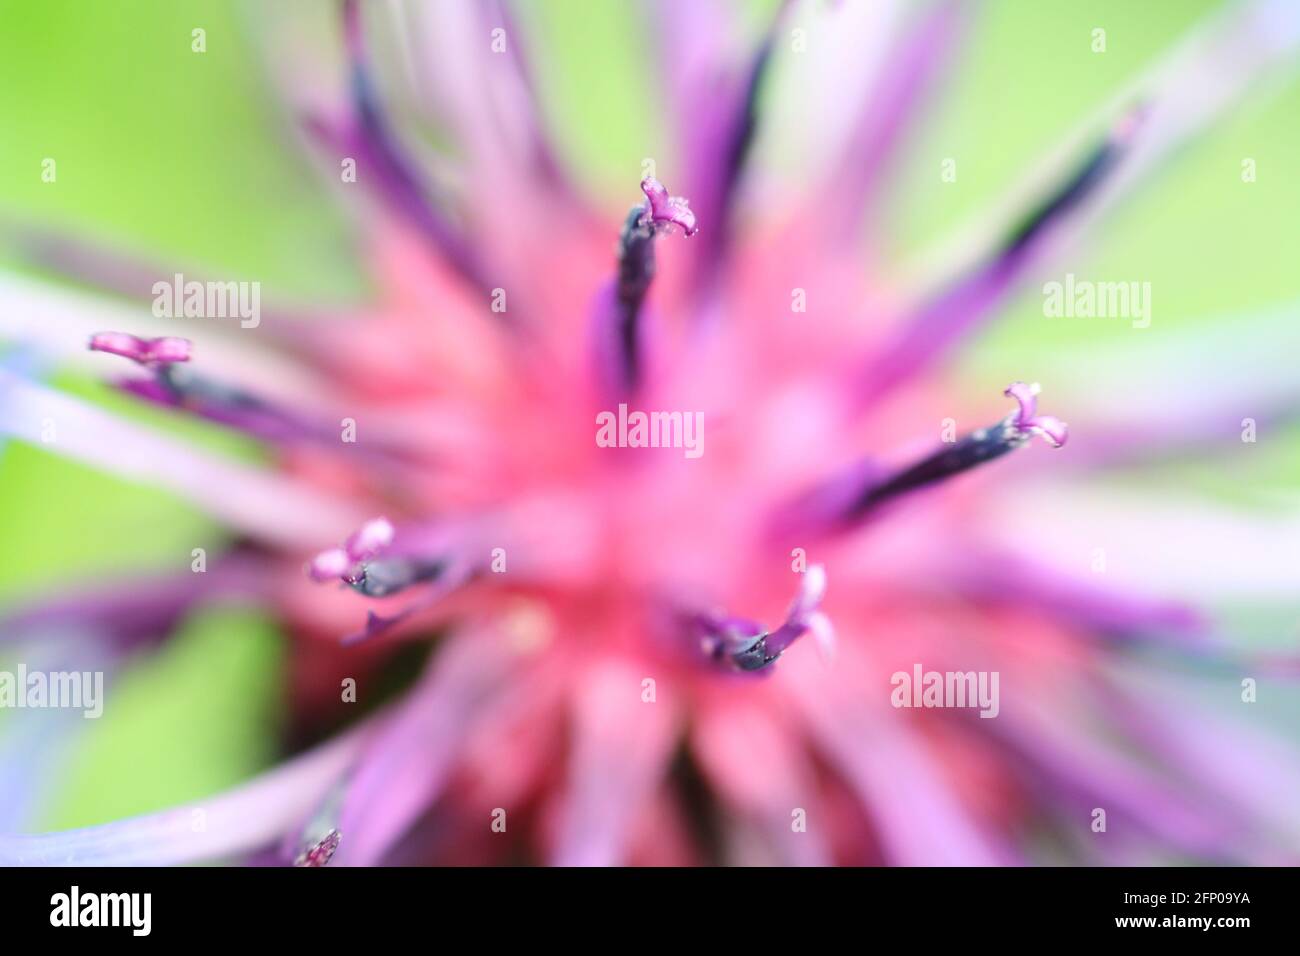 Macro gros plan du centre d'une fleur de maïs violet-bleu, montrant les étamines et le pollen. Très courte profondeur de champ et mise au point sélective. Banque D'Images